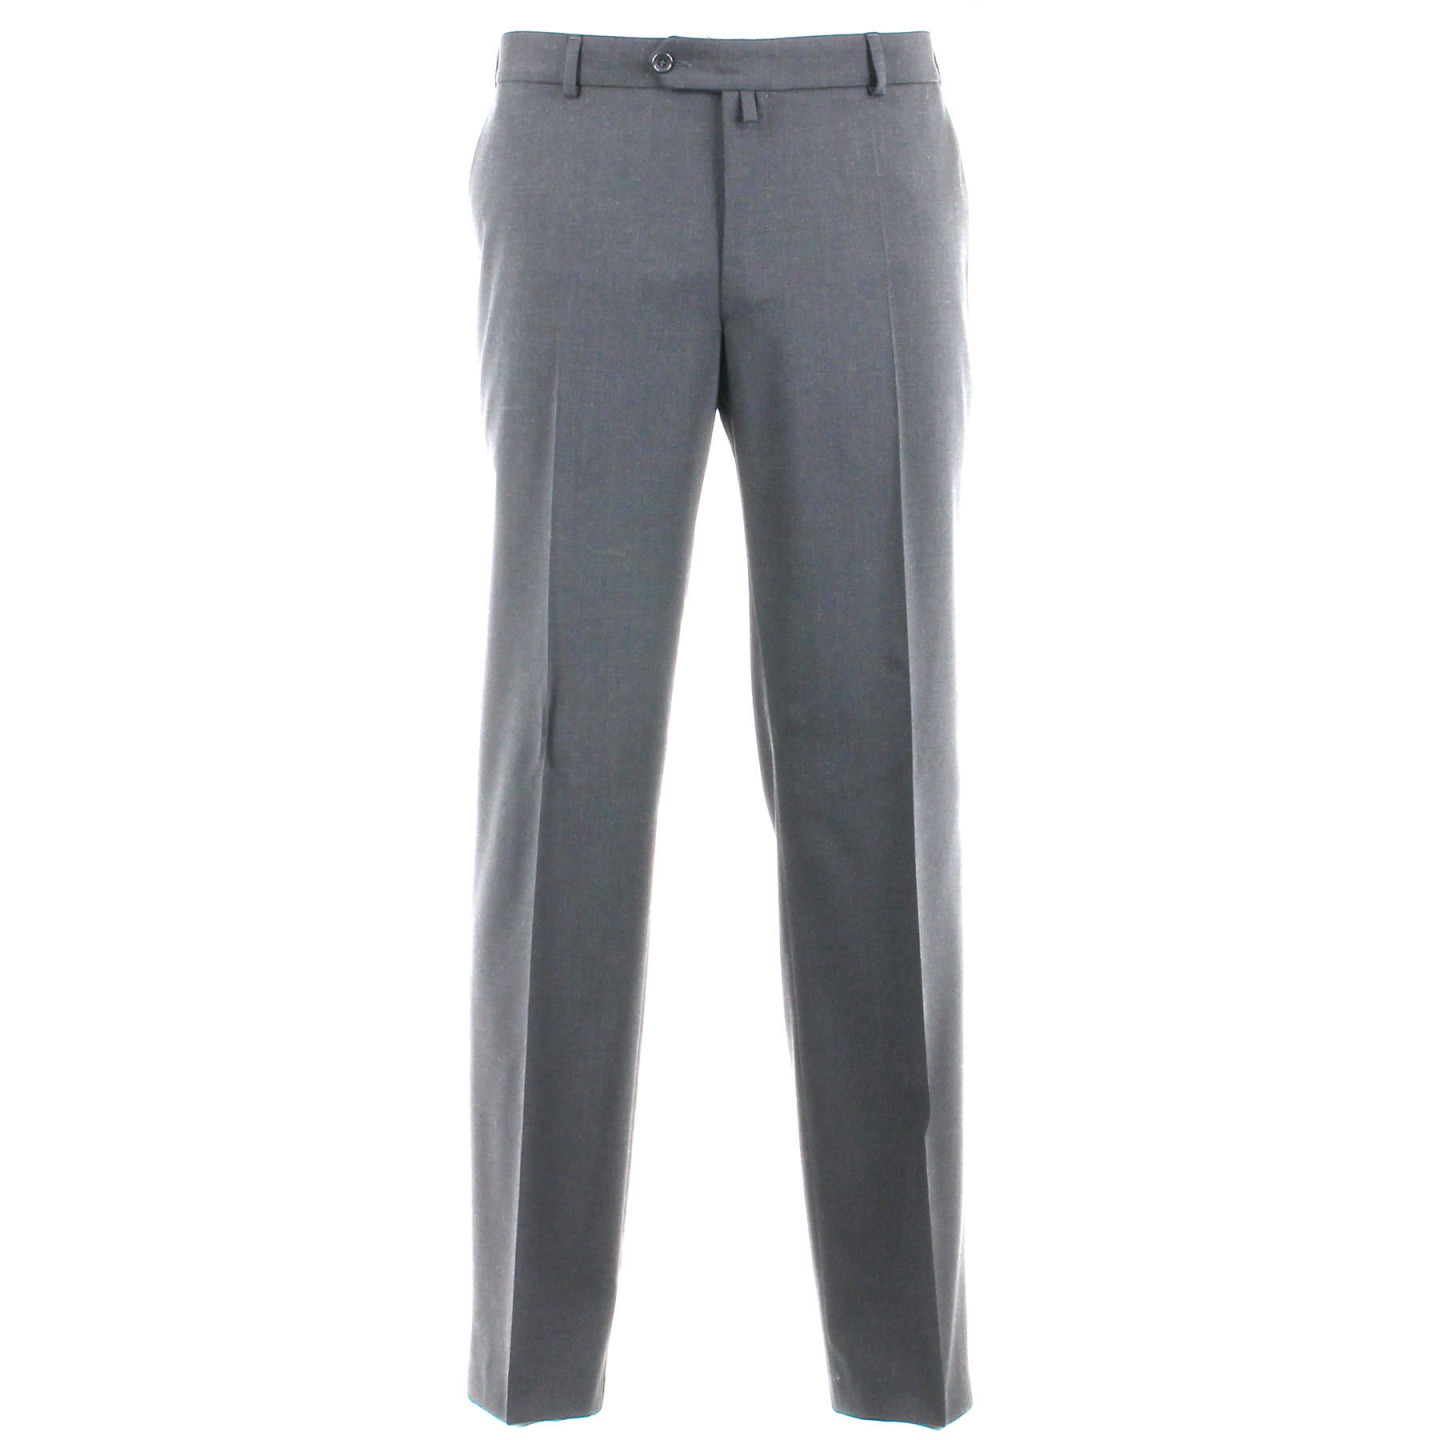 Pantalon gris de costume grande taille - Hommefort